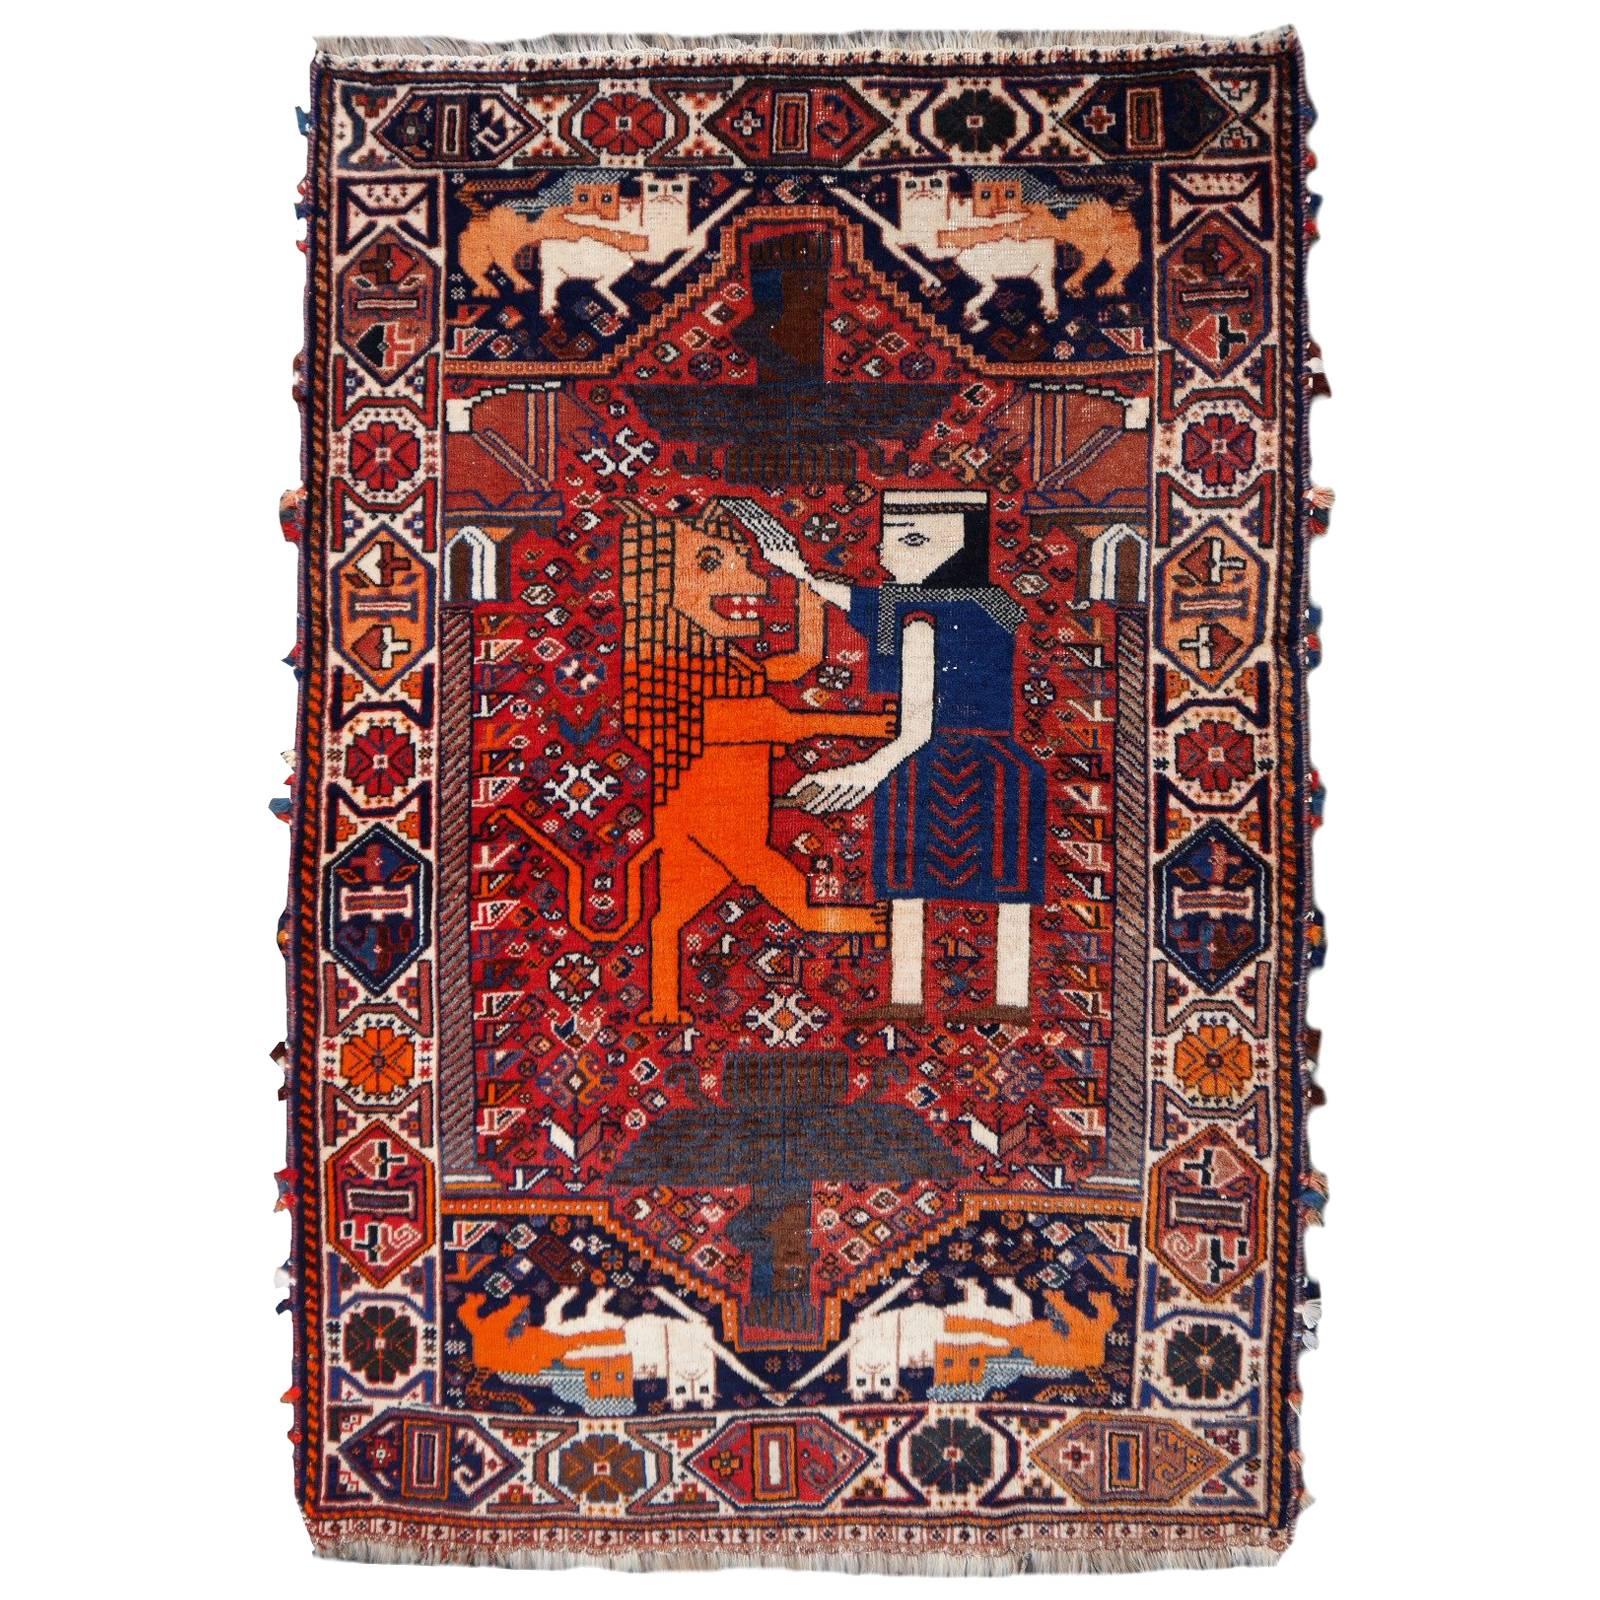 Lion Rug Qashqai Persian Vintage Nomadic Wedding Carpet